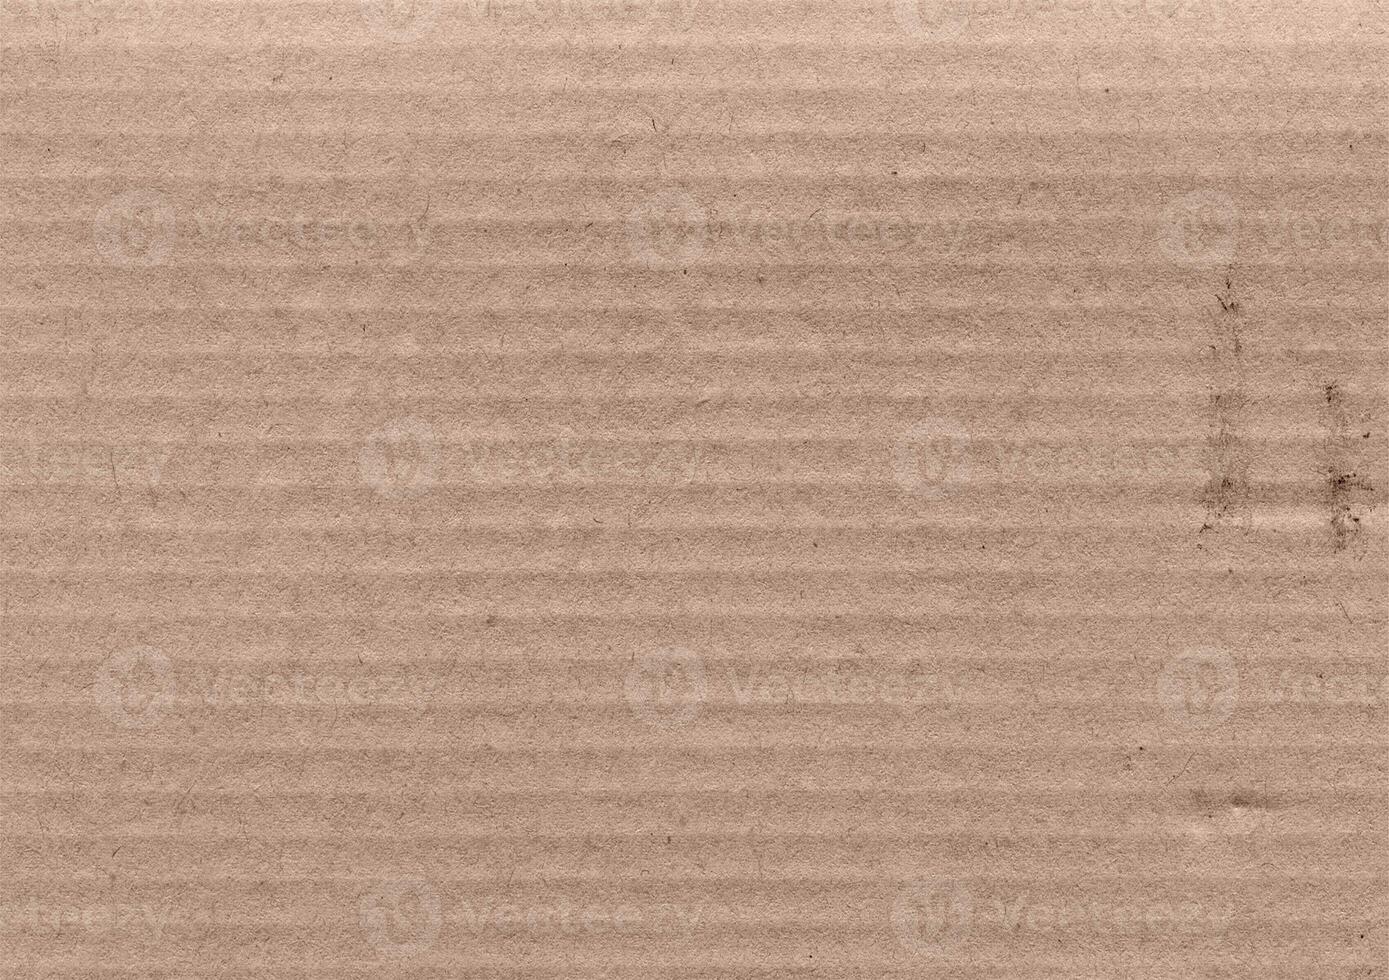 braun Kraft Papier Textur Hintergrund foto